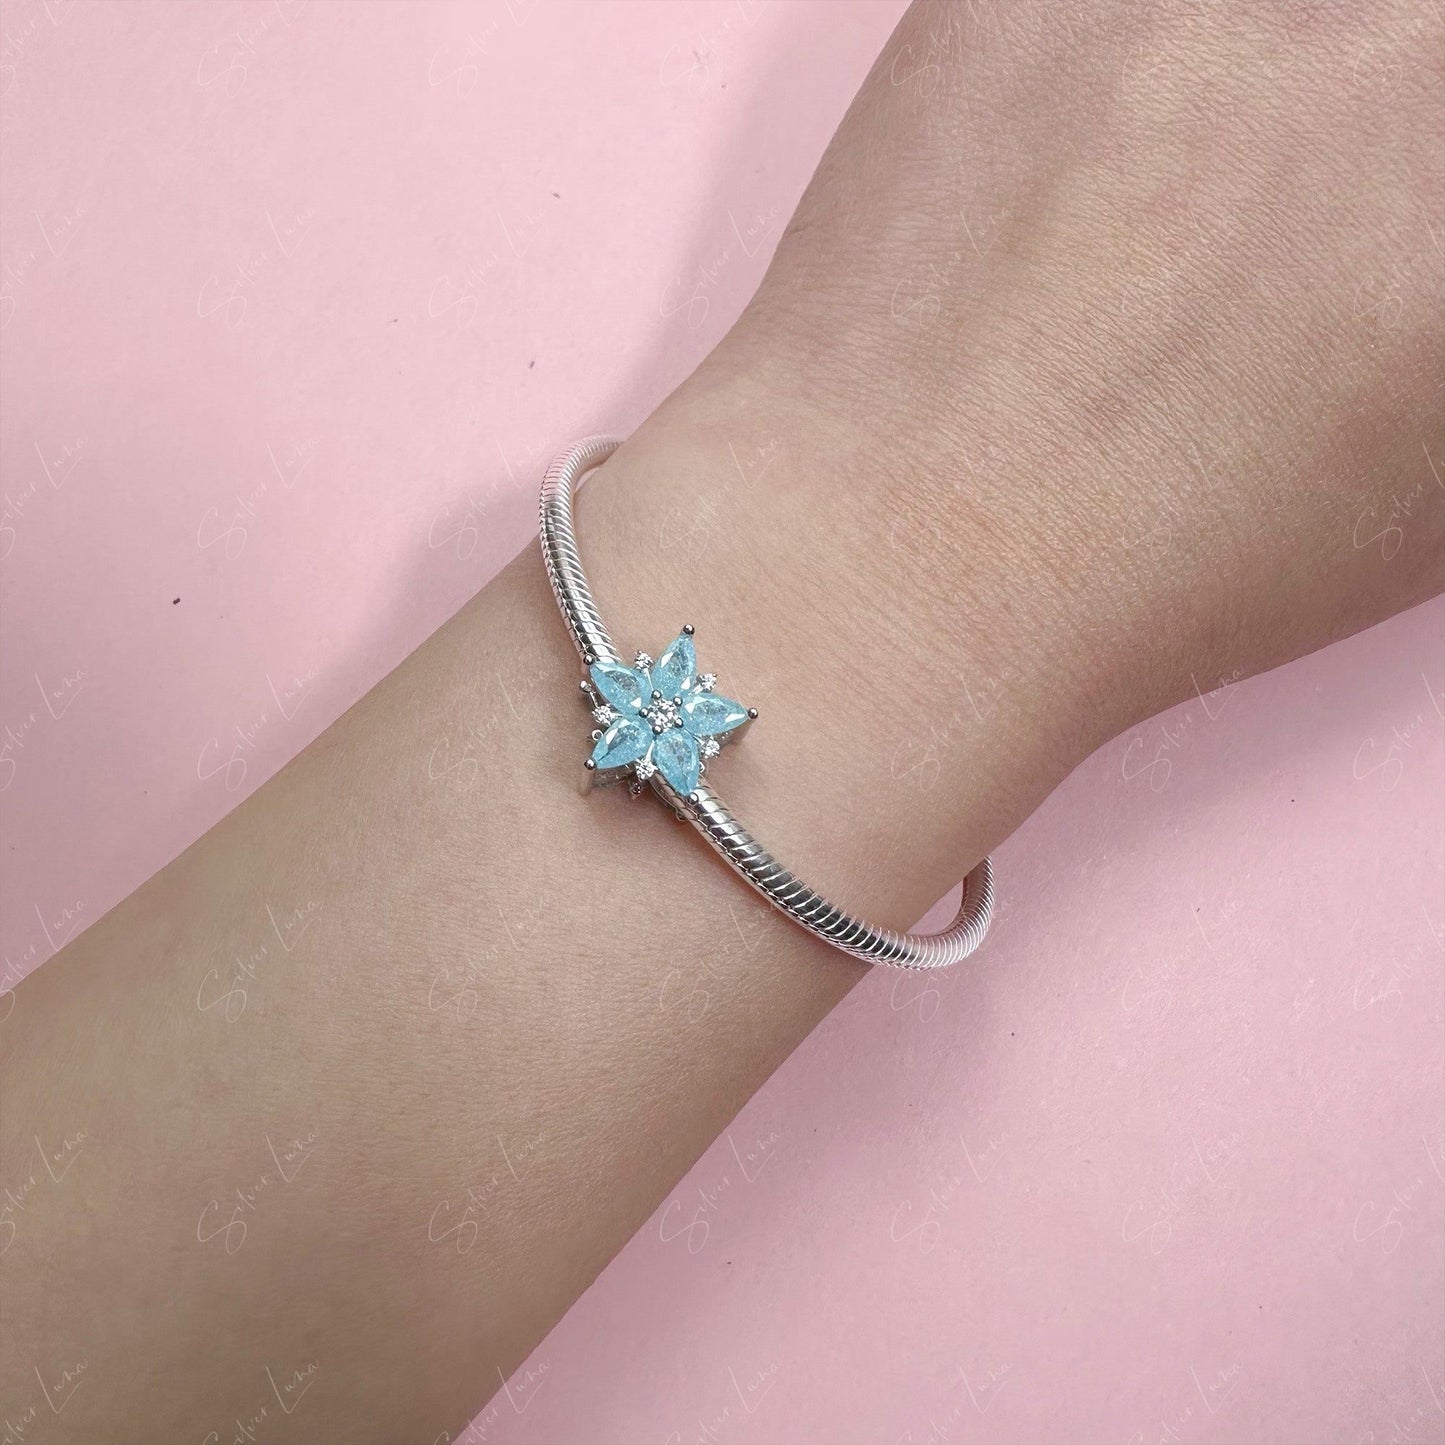 Blue crystal snow flower charm bead